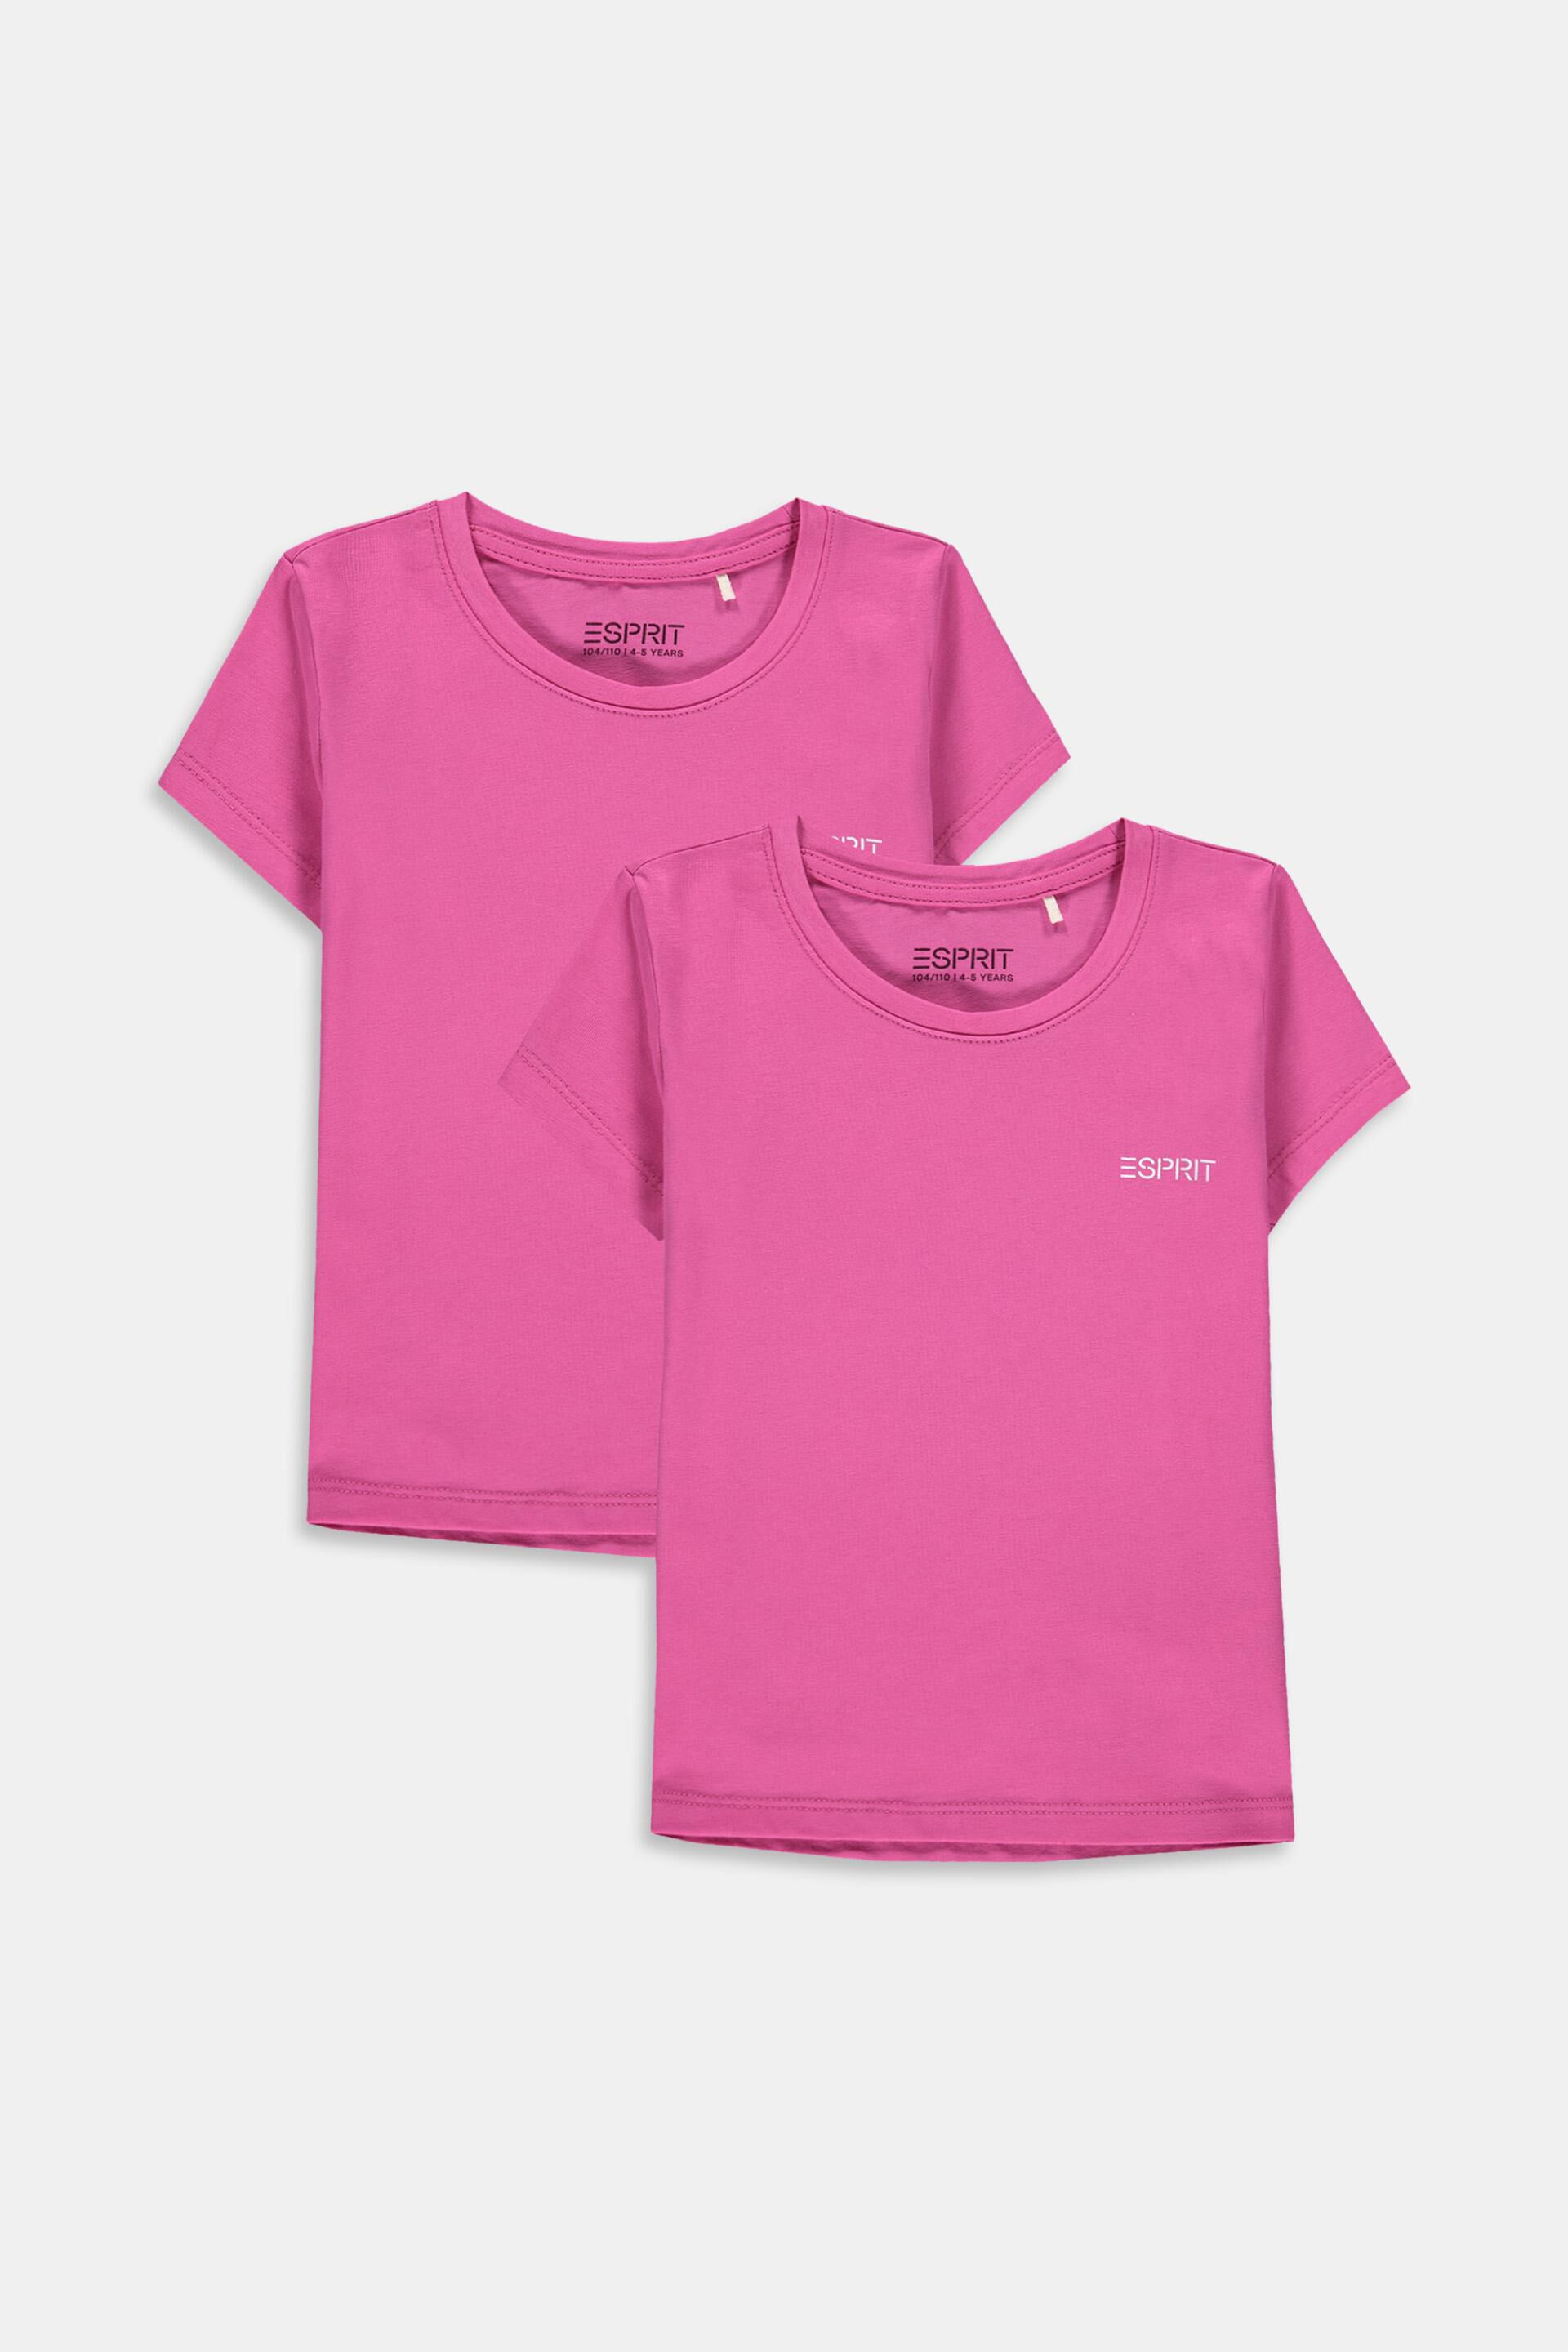 T-Shirts ESPRIT 7-8 Jahre weiß Kinder Jungen Esprit Kleidung Esprit Kinder T-Shirts & Polos Esprit Kinder T-Shirts Esprit Kinder T-Shirts Esprit Kinder 